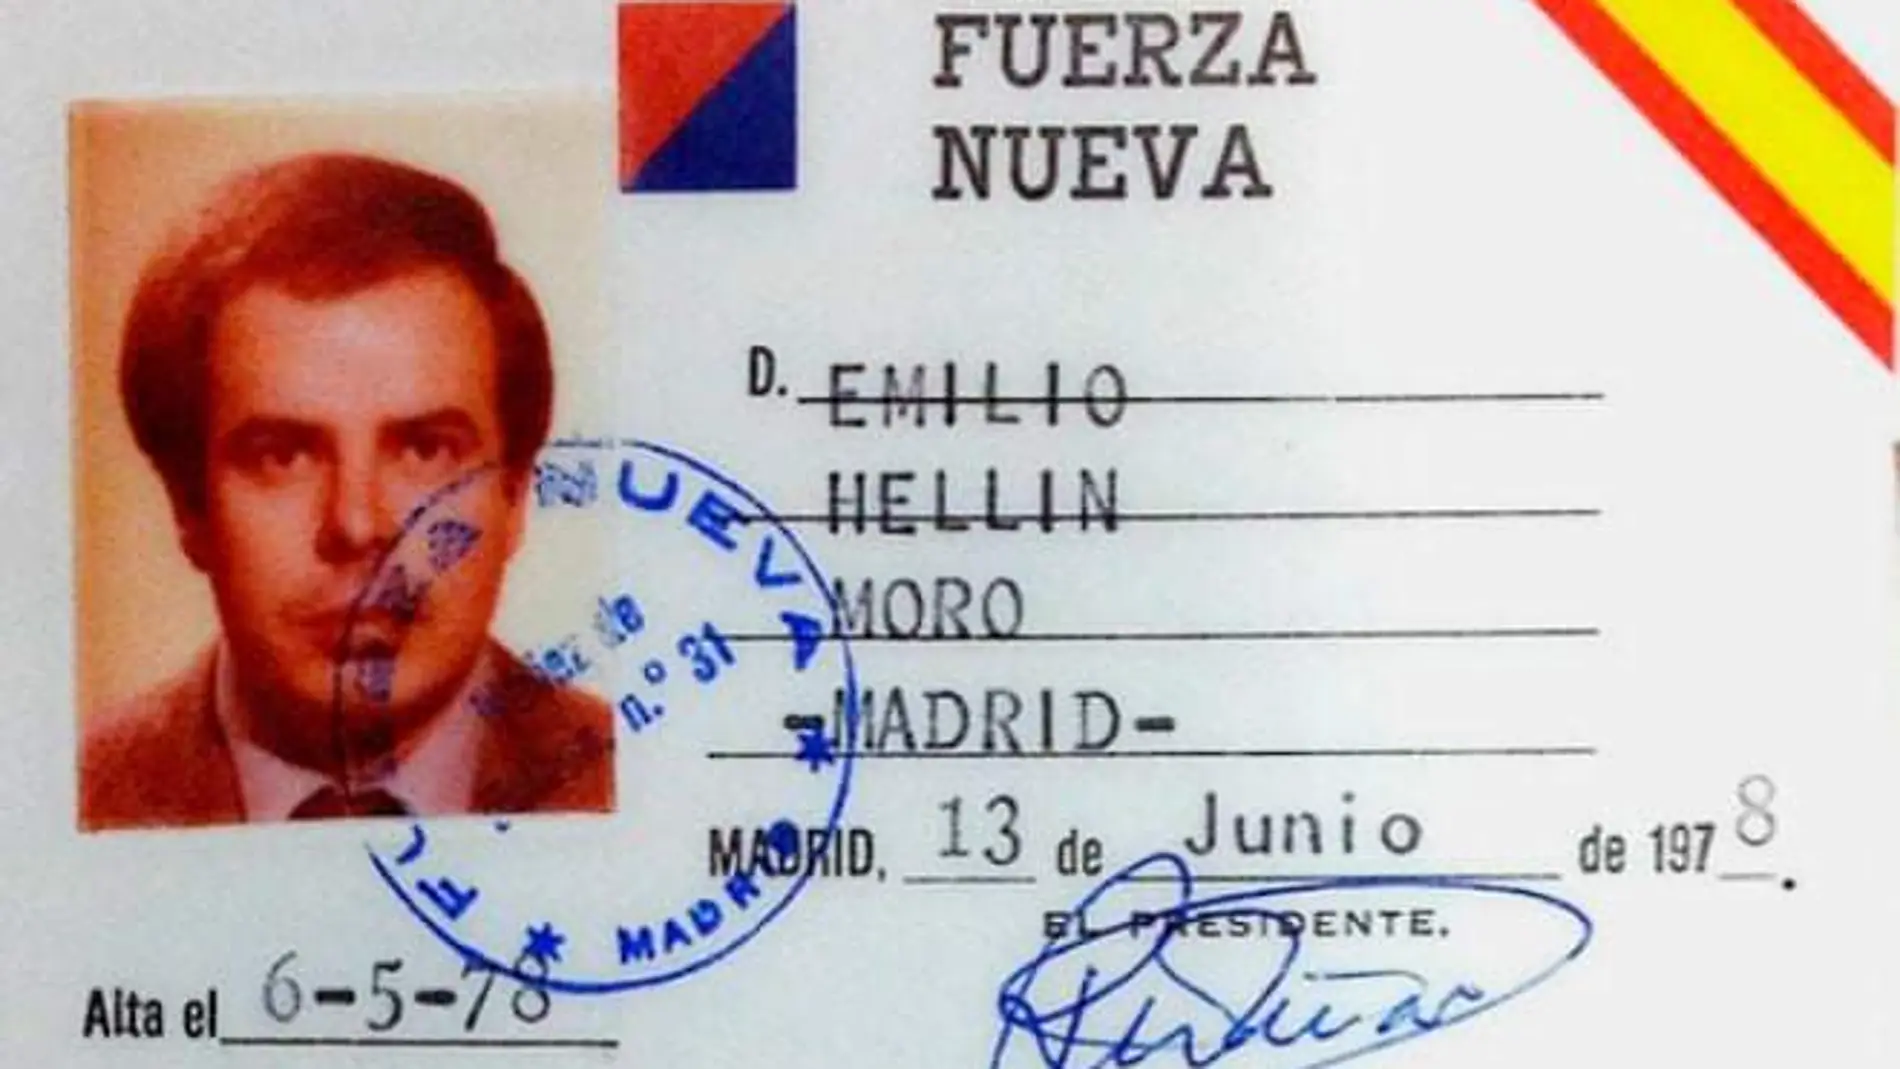 El carné de Emilio Hellín como miembro de Fuerza Nueva